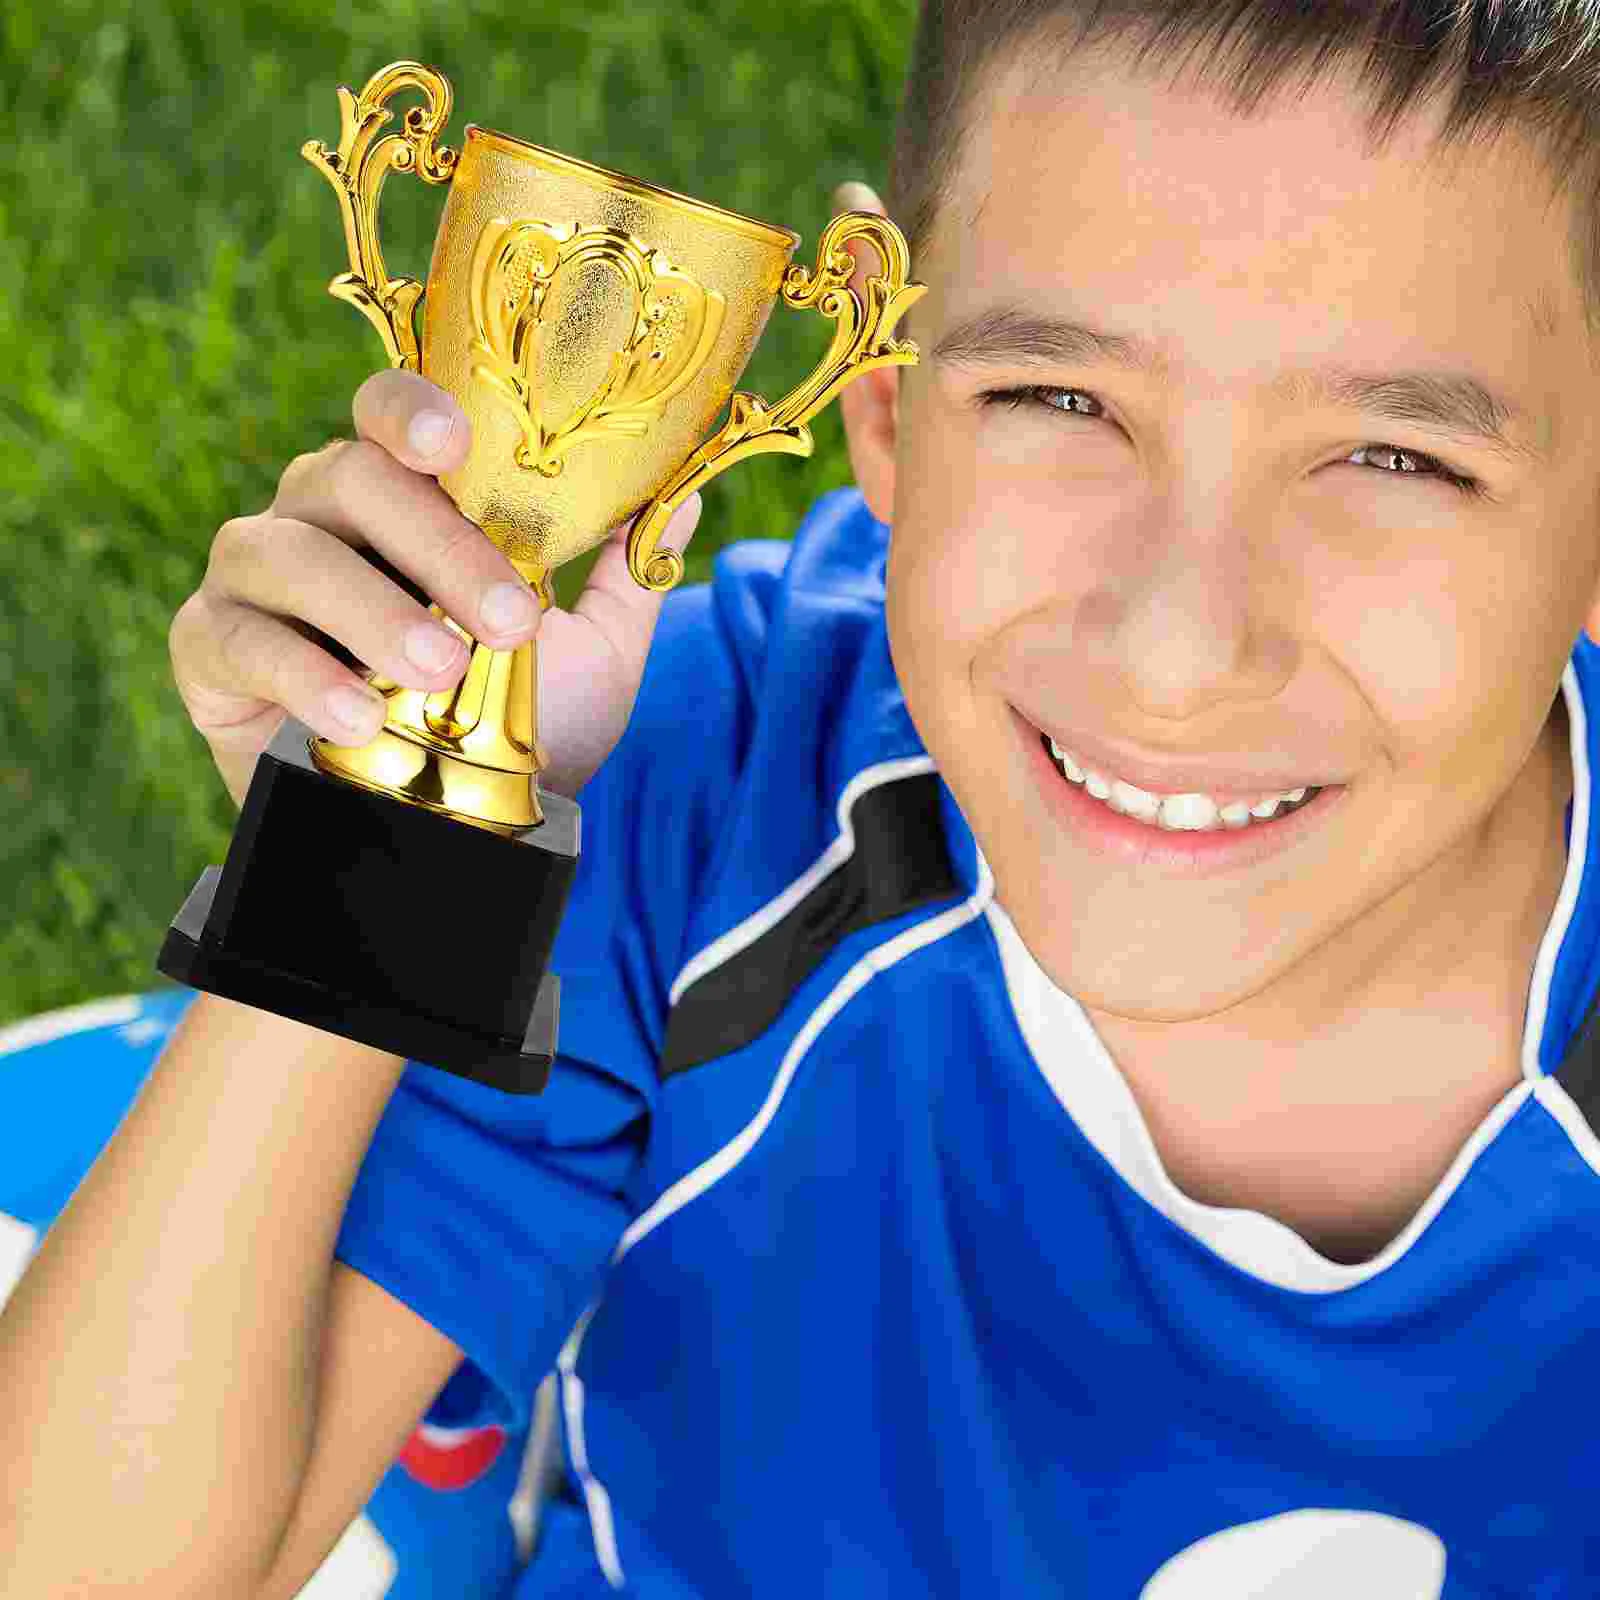 

Trophy Trophies Award Plastic Gold Kids Awards Cup Mini Cups Winner Children Reward Funny Trophytrophy Medals Soccer Toy Golden